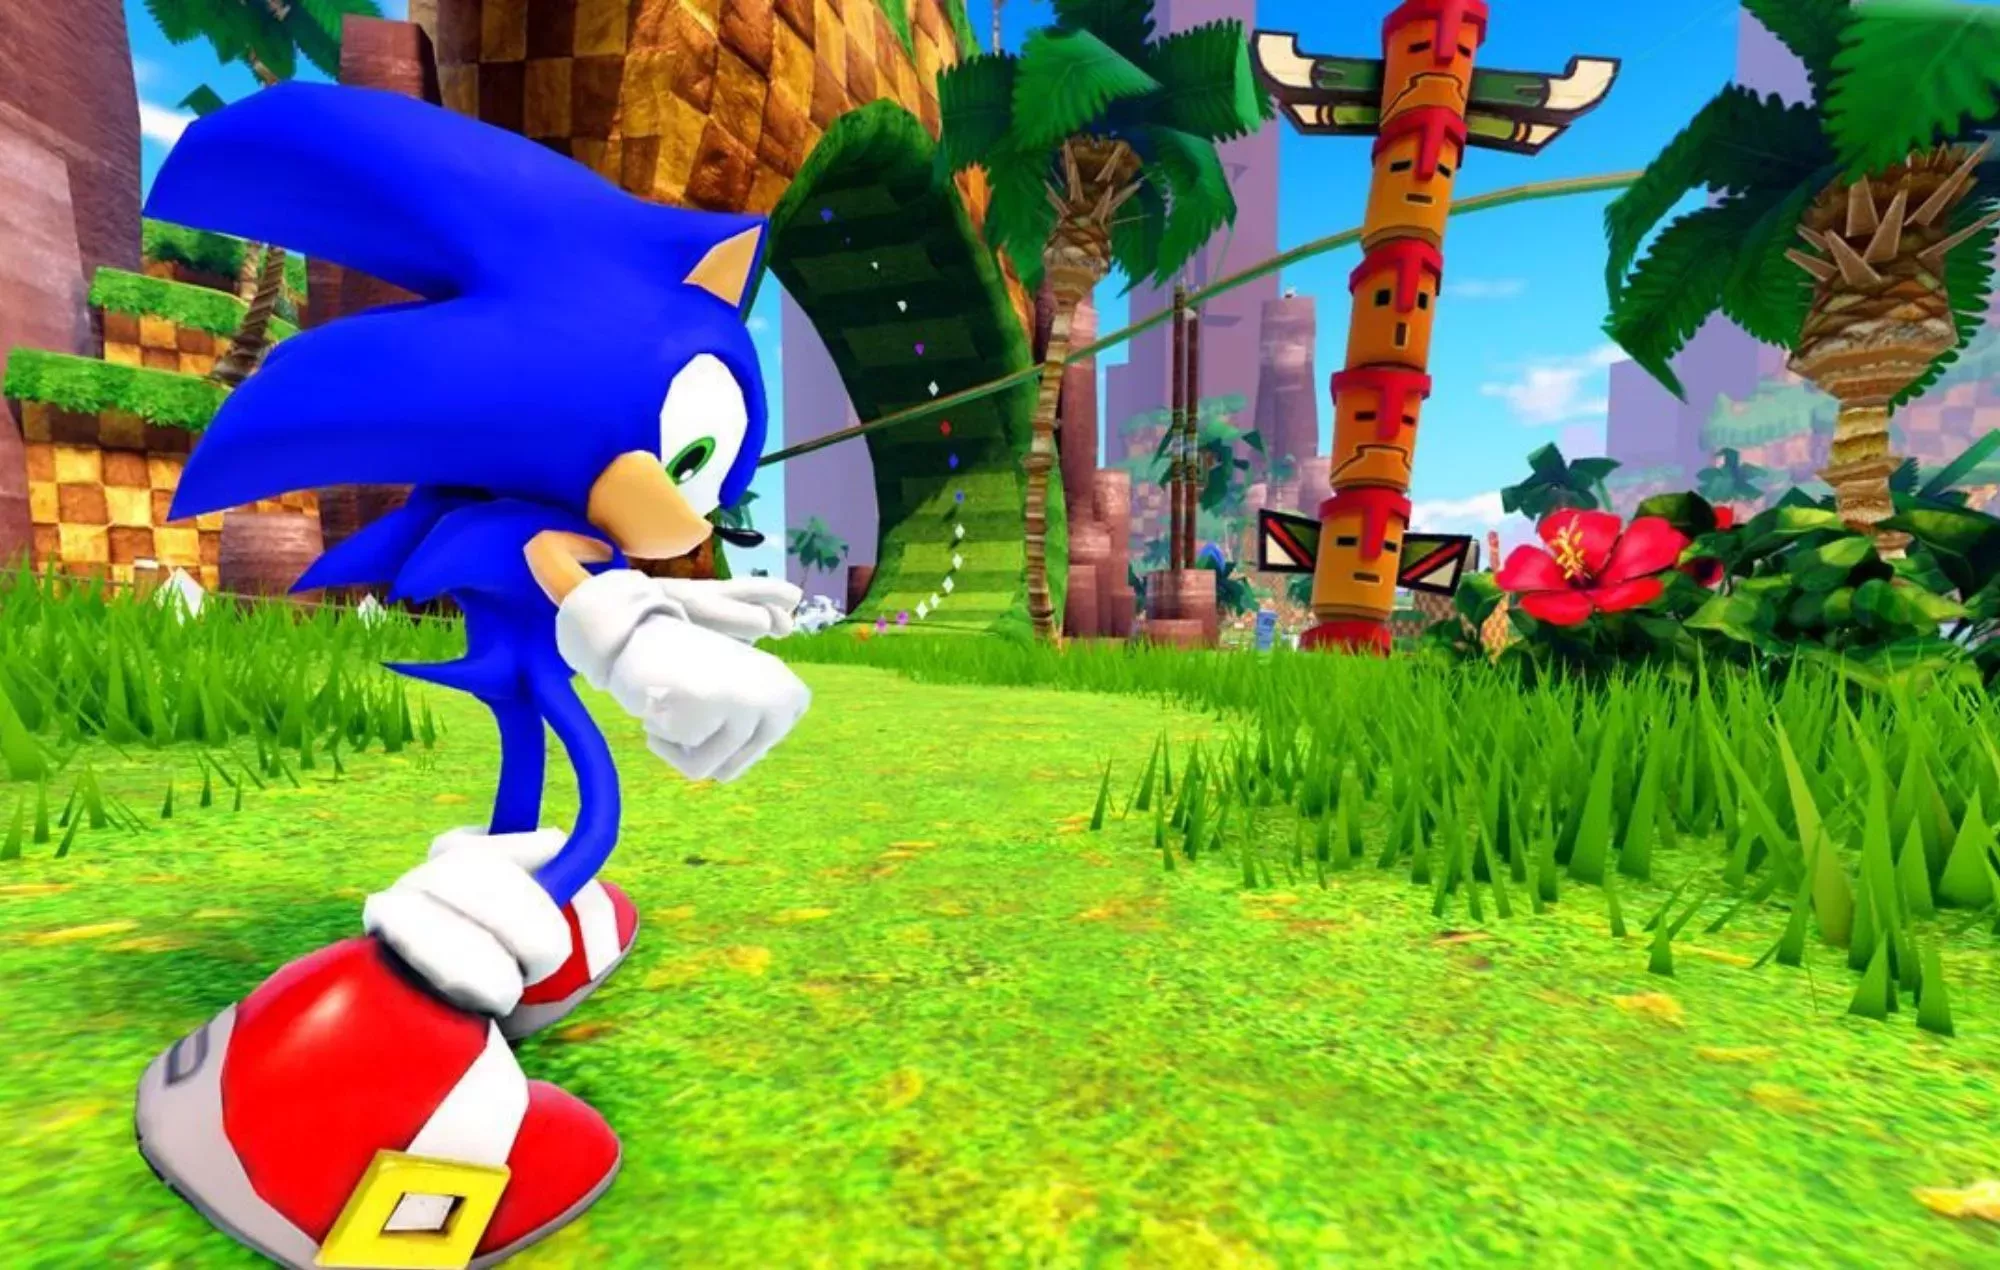 Sonic The Hedgehog' se convierte en un juego aprobado por Sega en Roblox